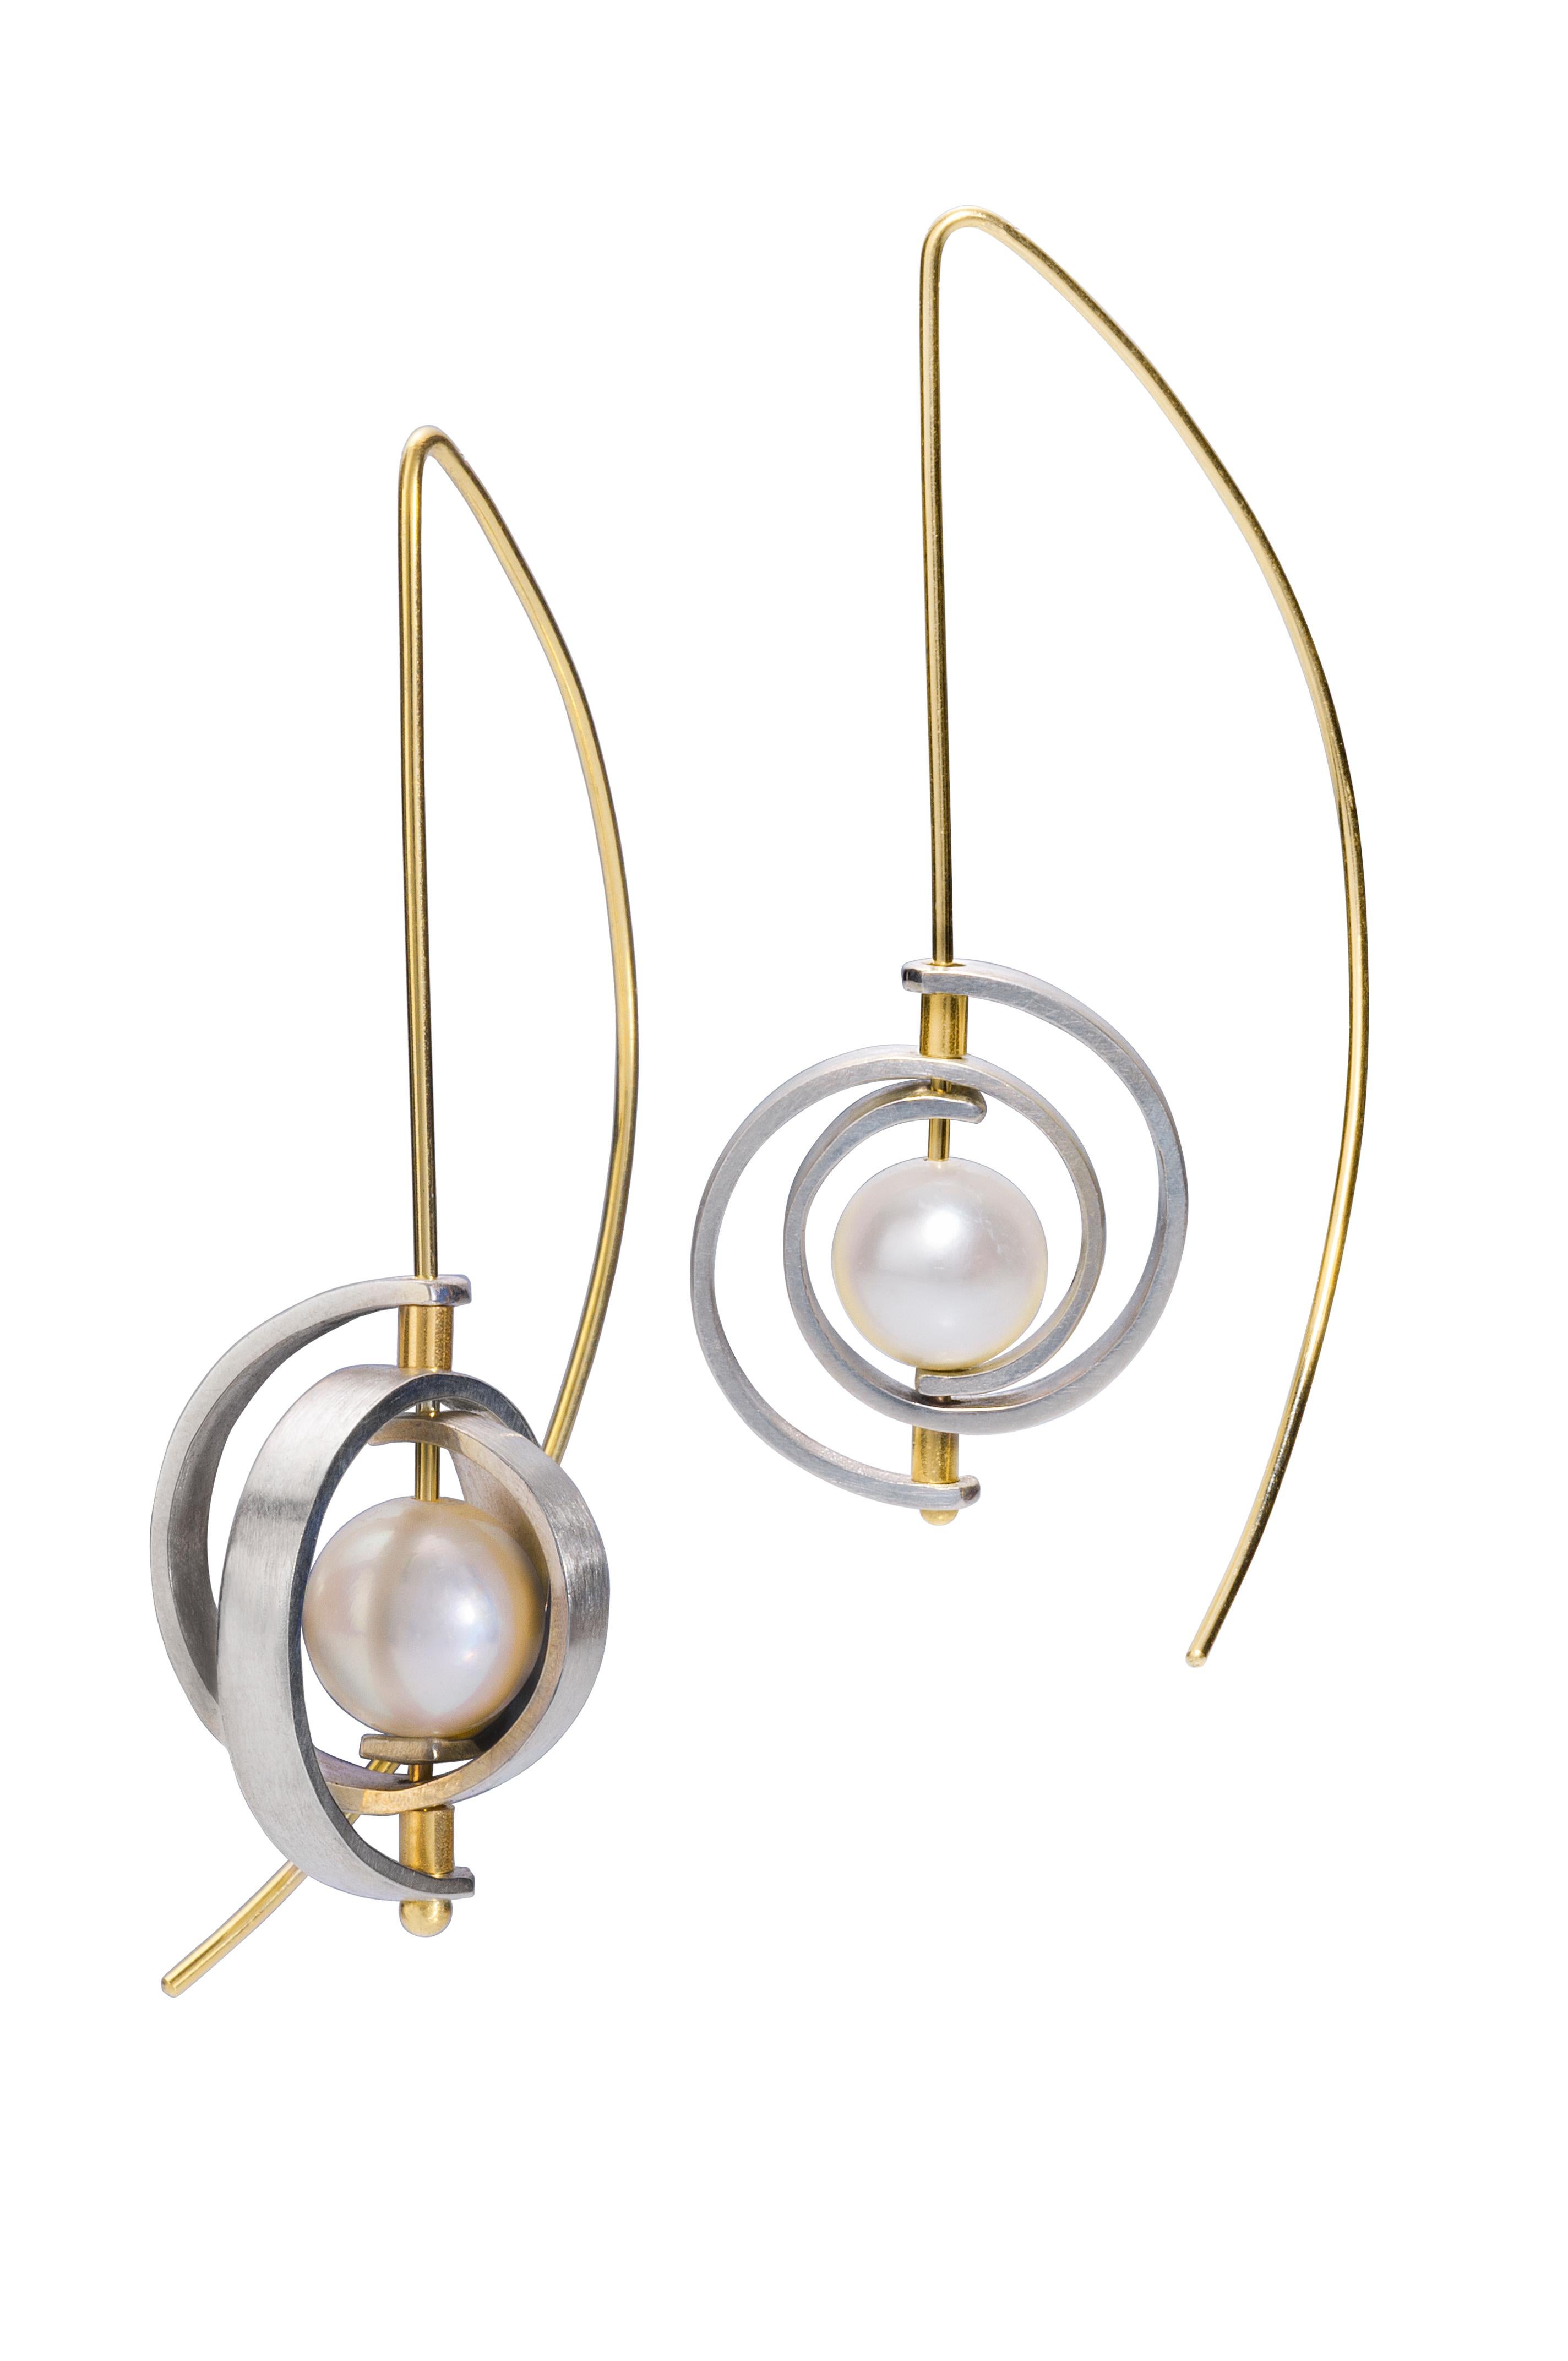 Diese Perlenohrringe sind ein moderner Klassiker. Es handelt sich um Medium Spiral Dangle Earrings aus der Orbit-Kollektion mit Spiralen aus Sterlingsilber, einem Ohrdraht aus 14-karätigem Gelbgold (21 Gauge) und einer glänzenden, 7-8,5 mm großen